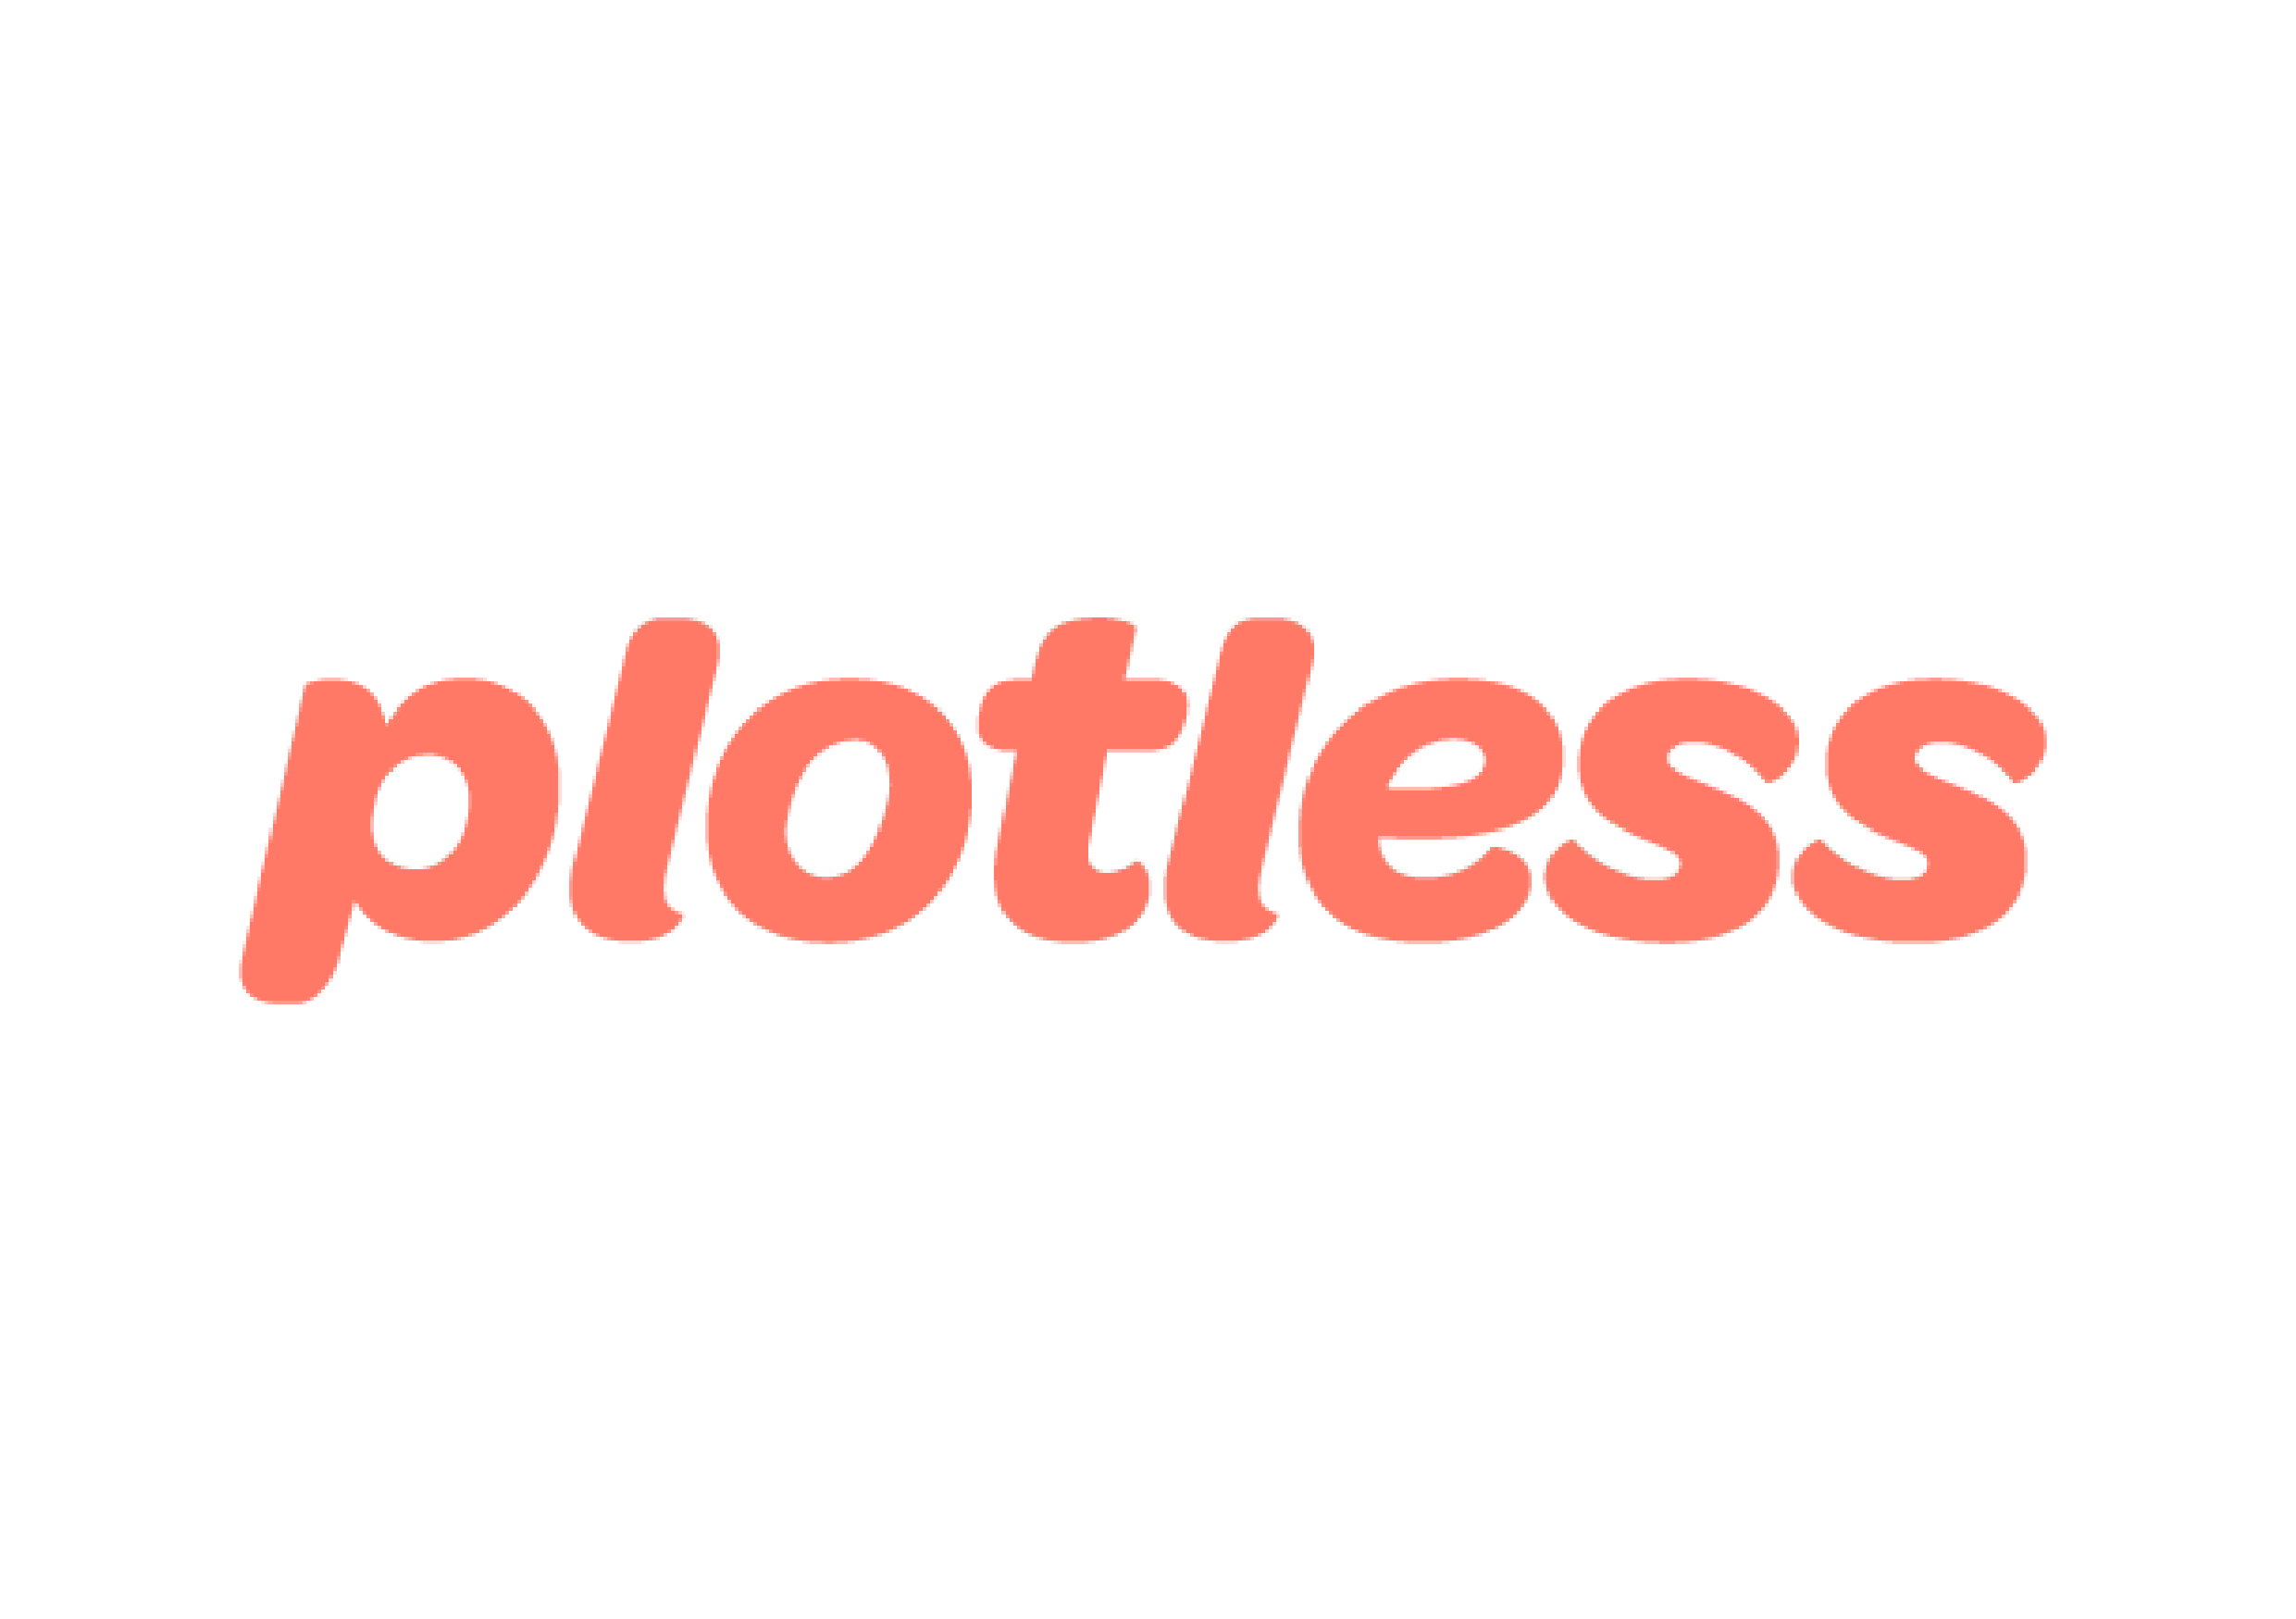 Plotless